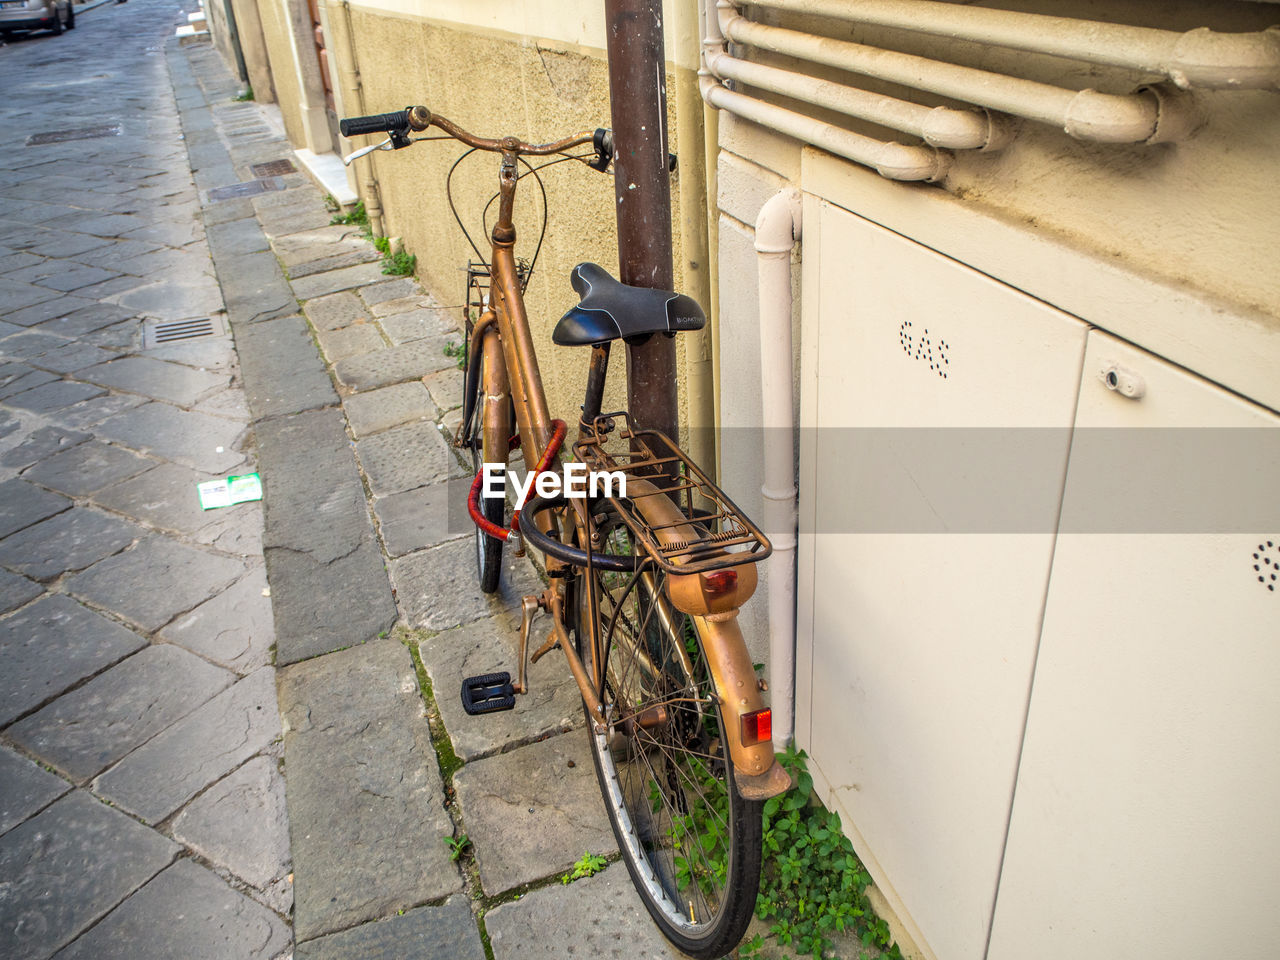 Bicycle parked on sidewalk